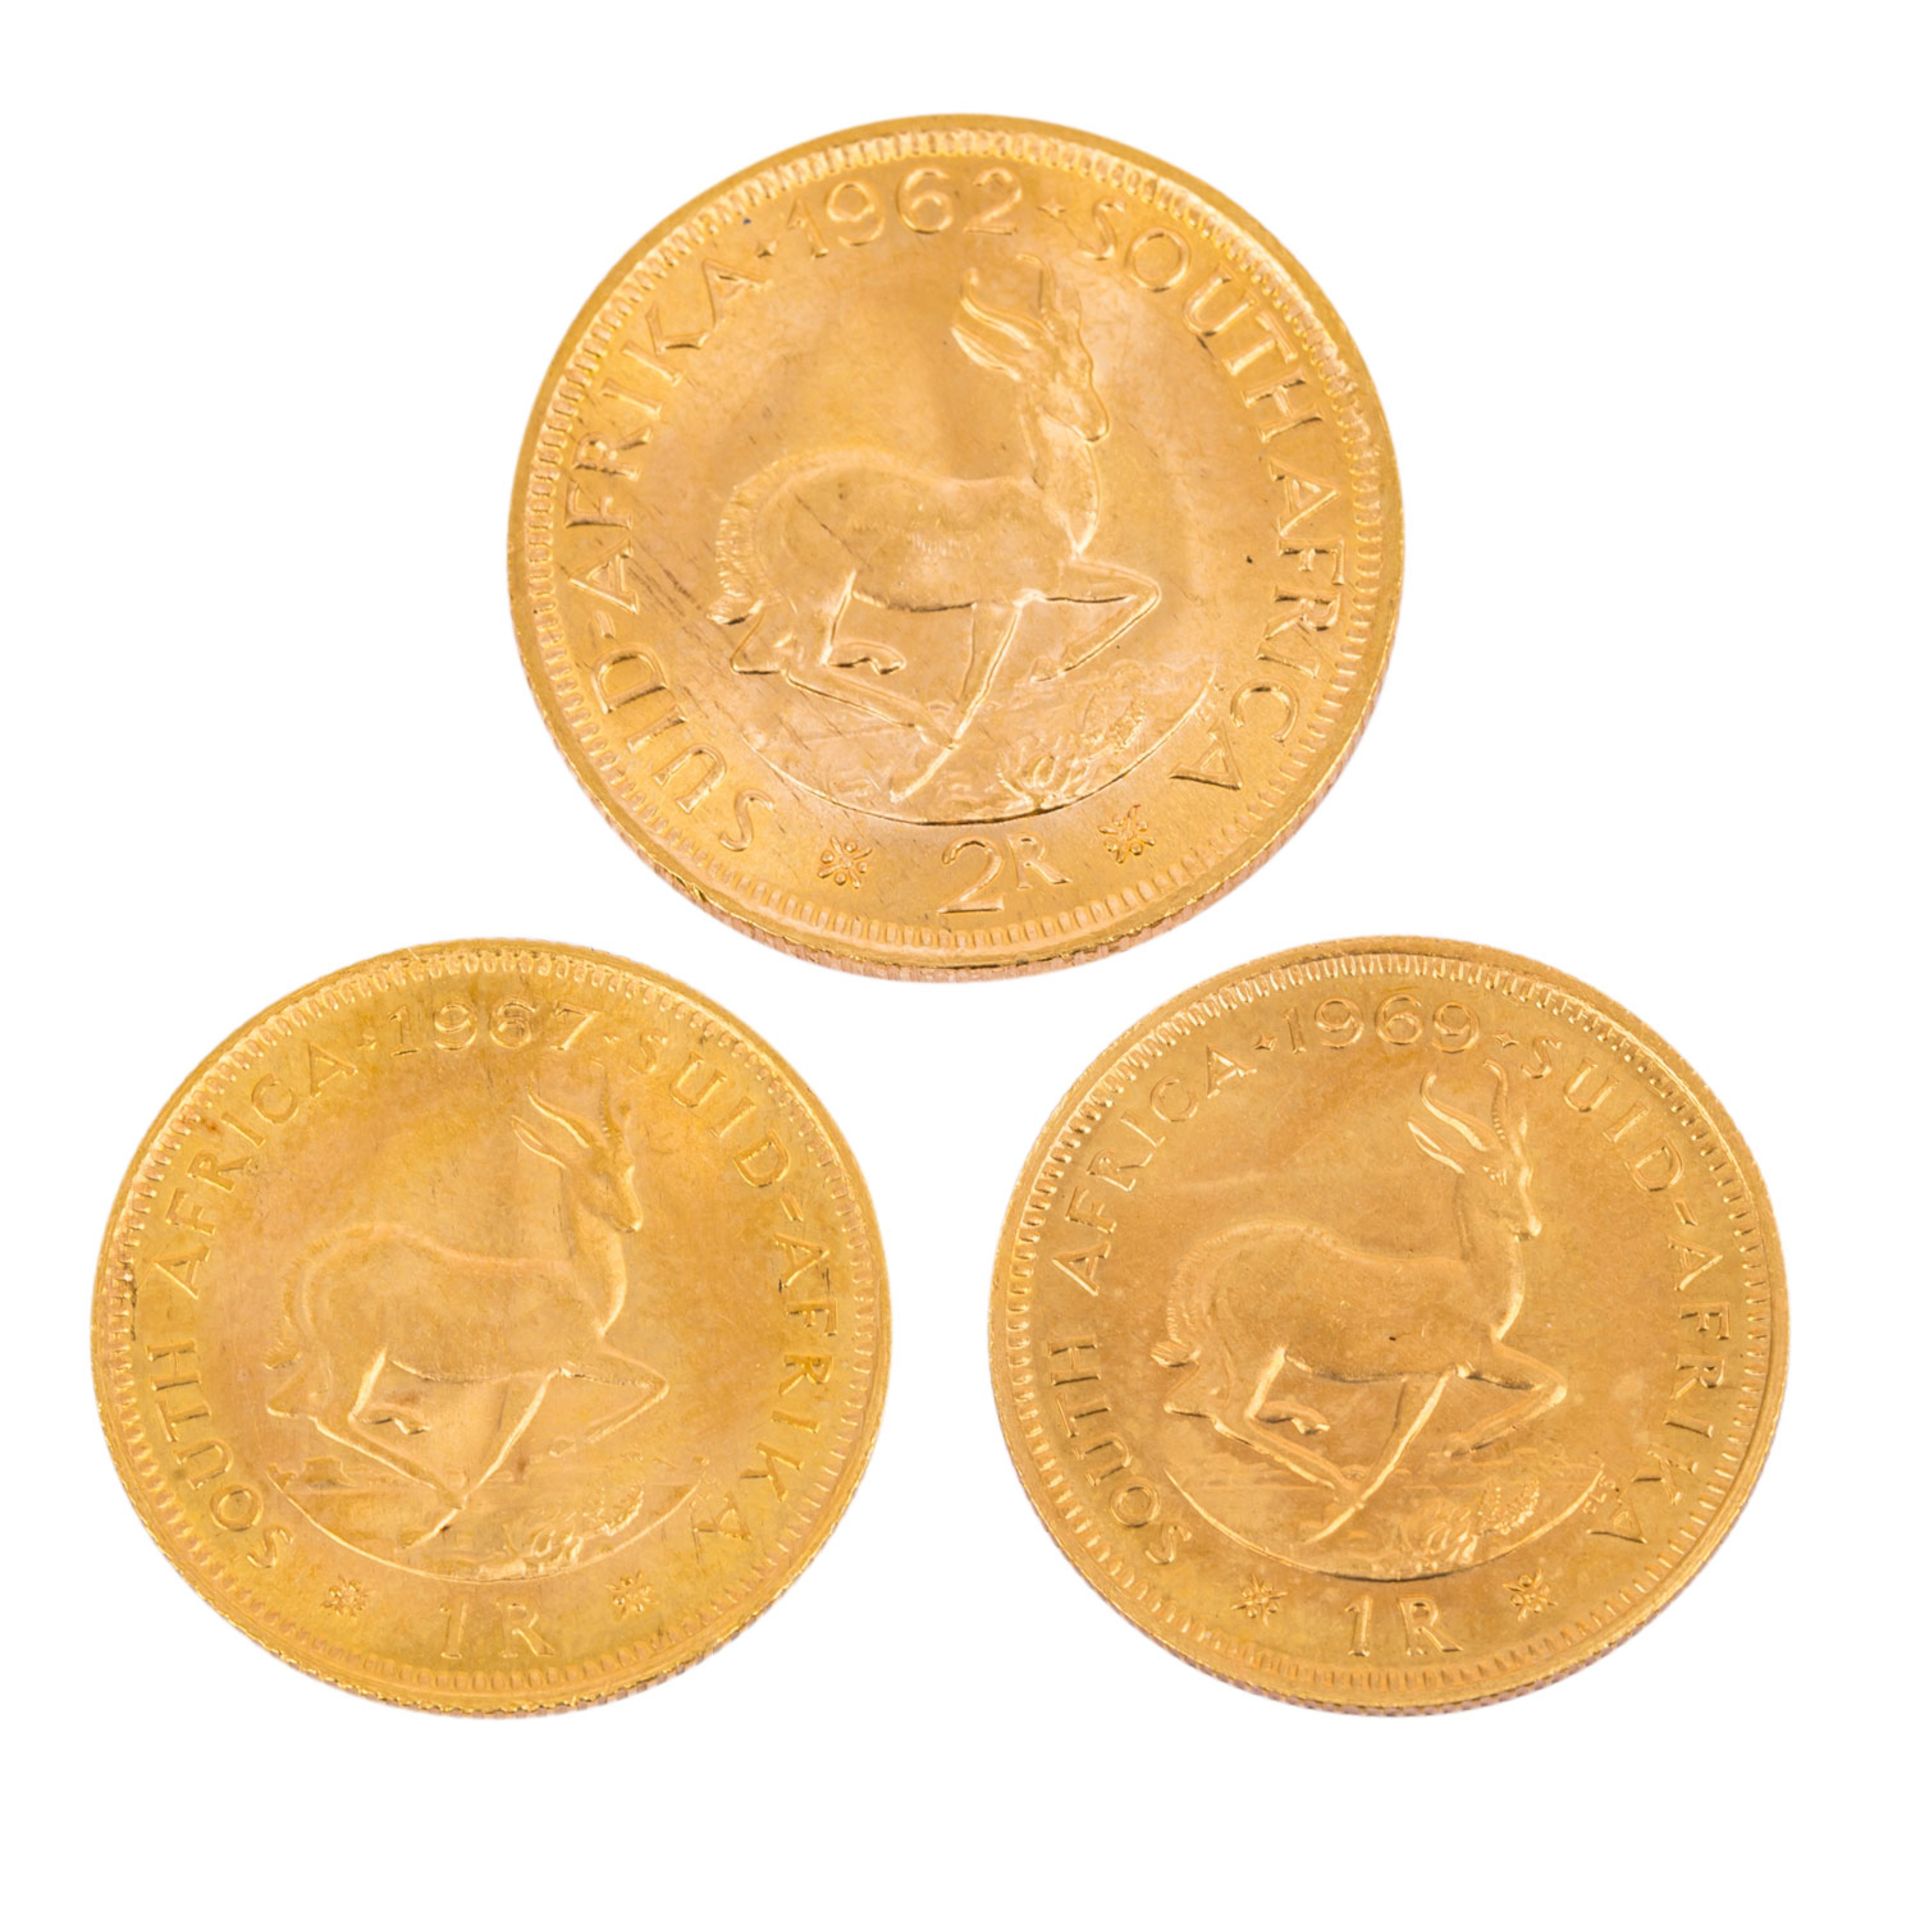 Kleines Goldlot Südafrikainsgesamt Feingewicht ca. 16g, besteht aus 2x 1 Rand 1967 un - Image 2 of 2